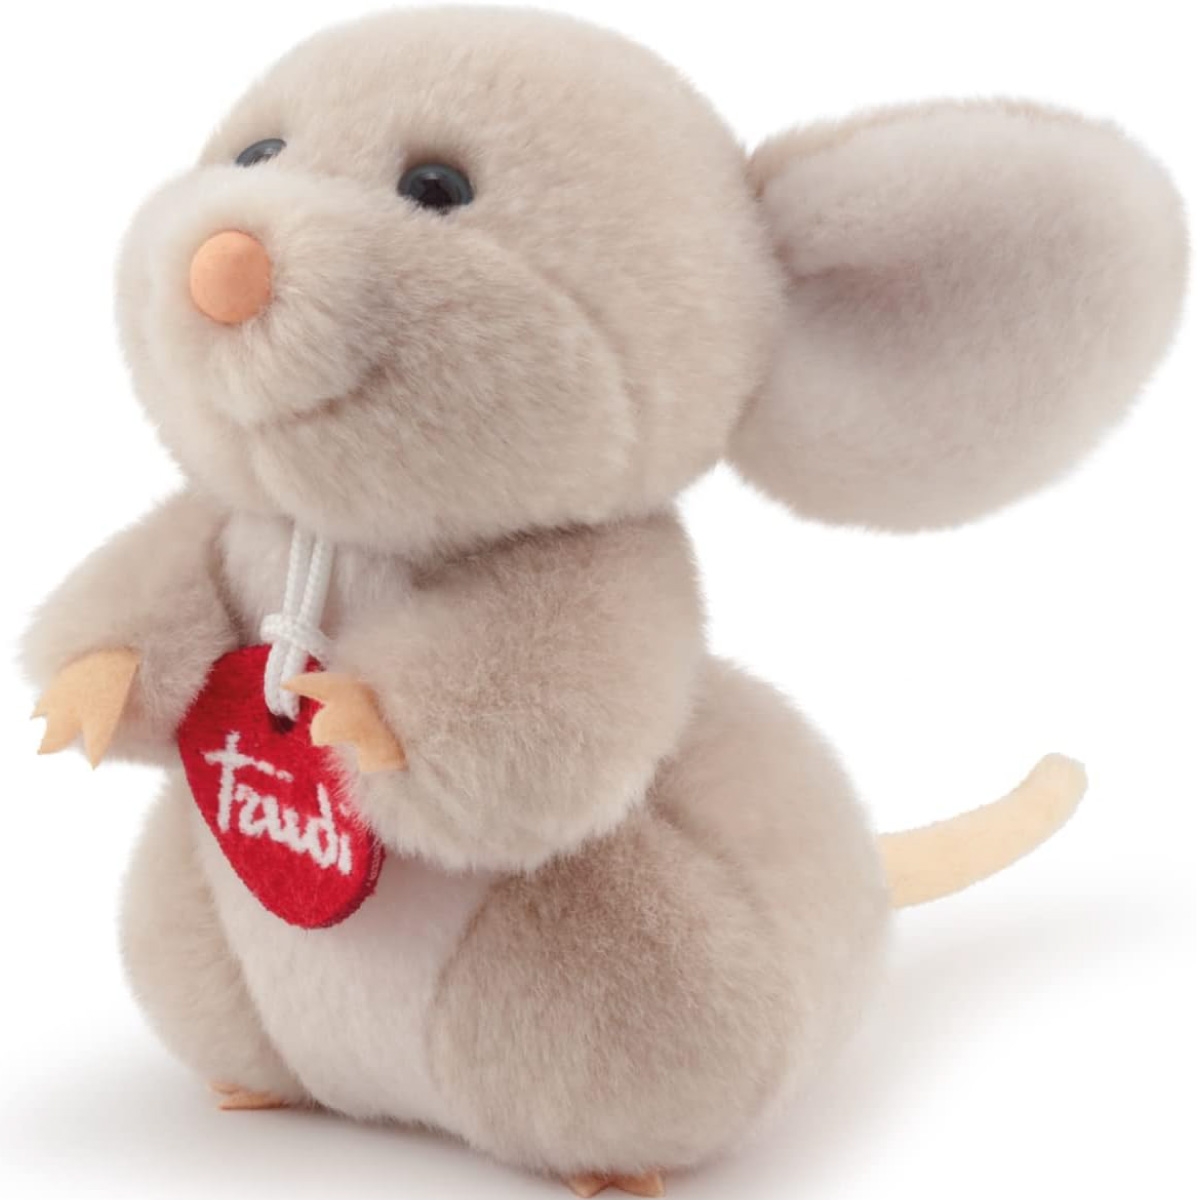 LEGAMI Cuscino - Super Soft! - Teddy Bear a 25,99 €